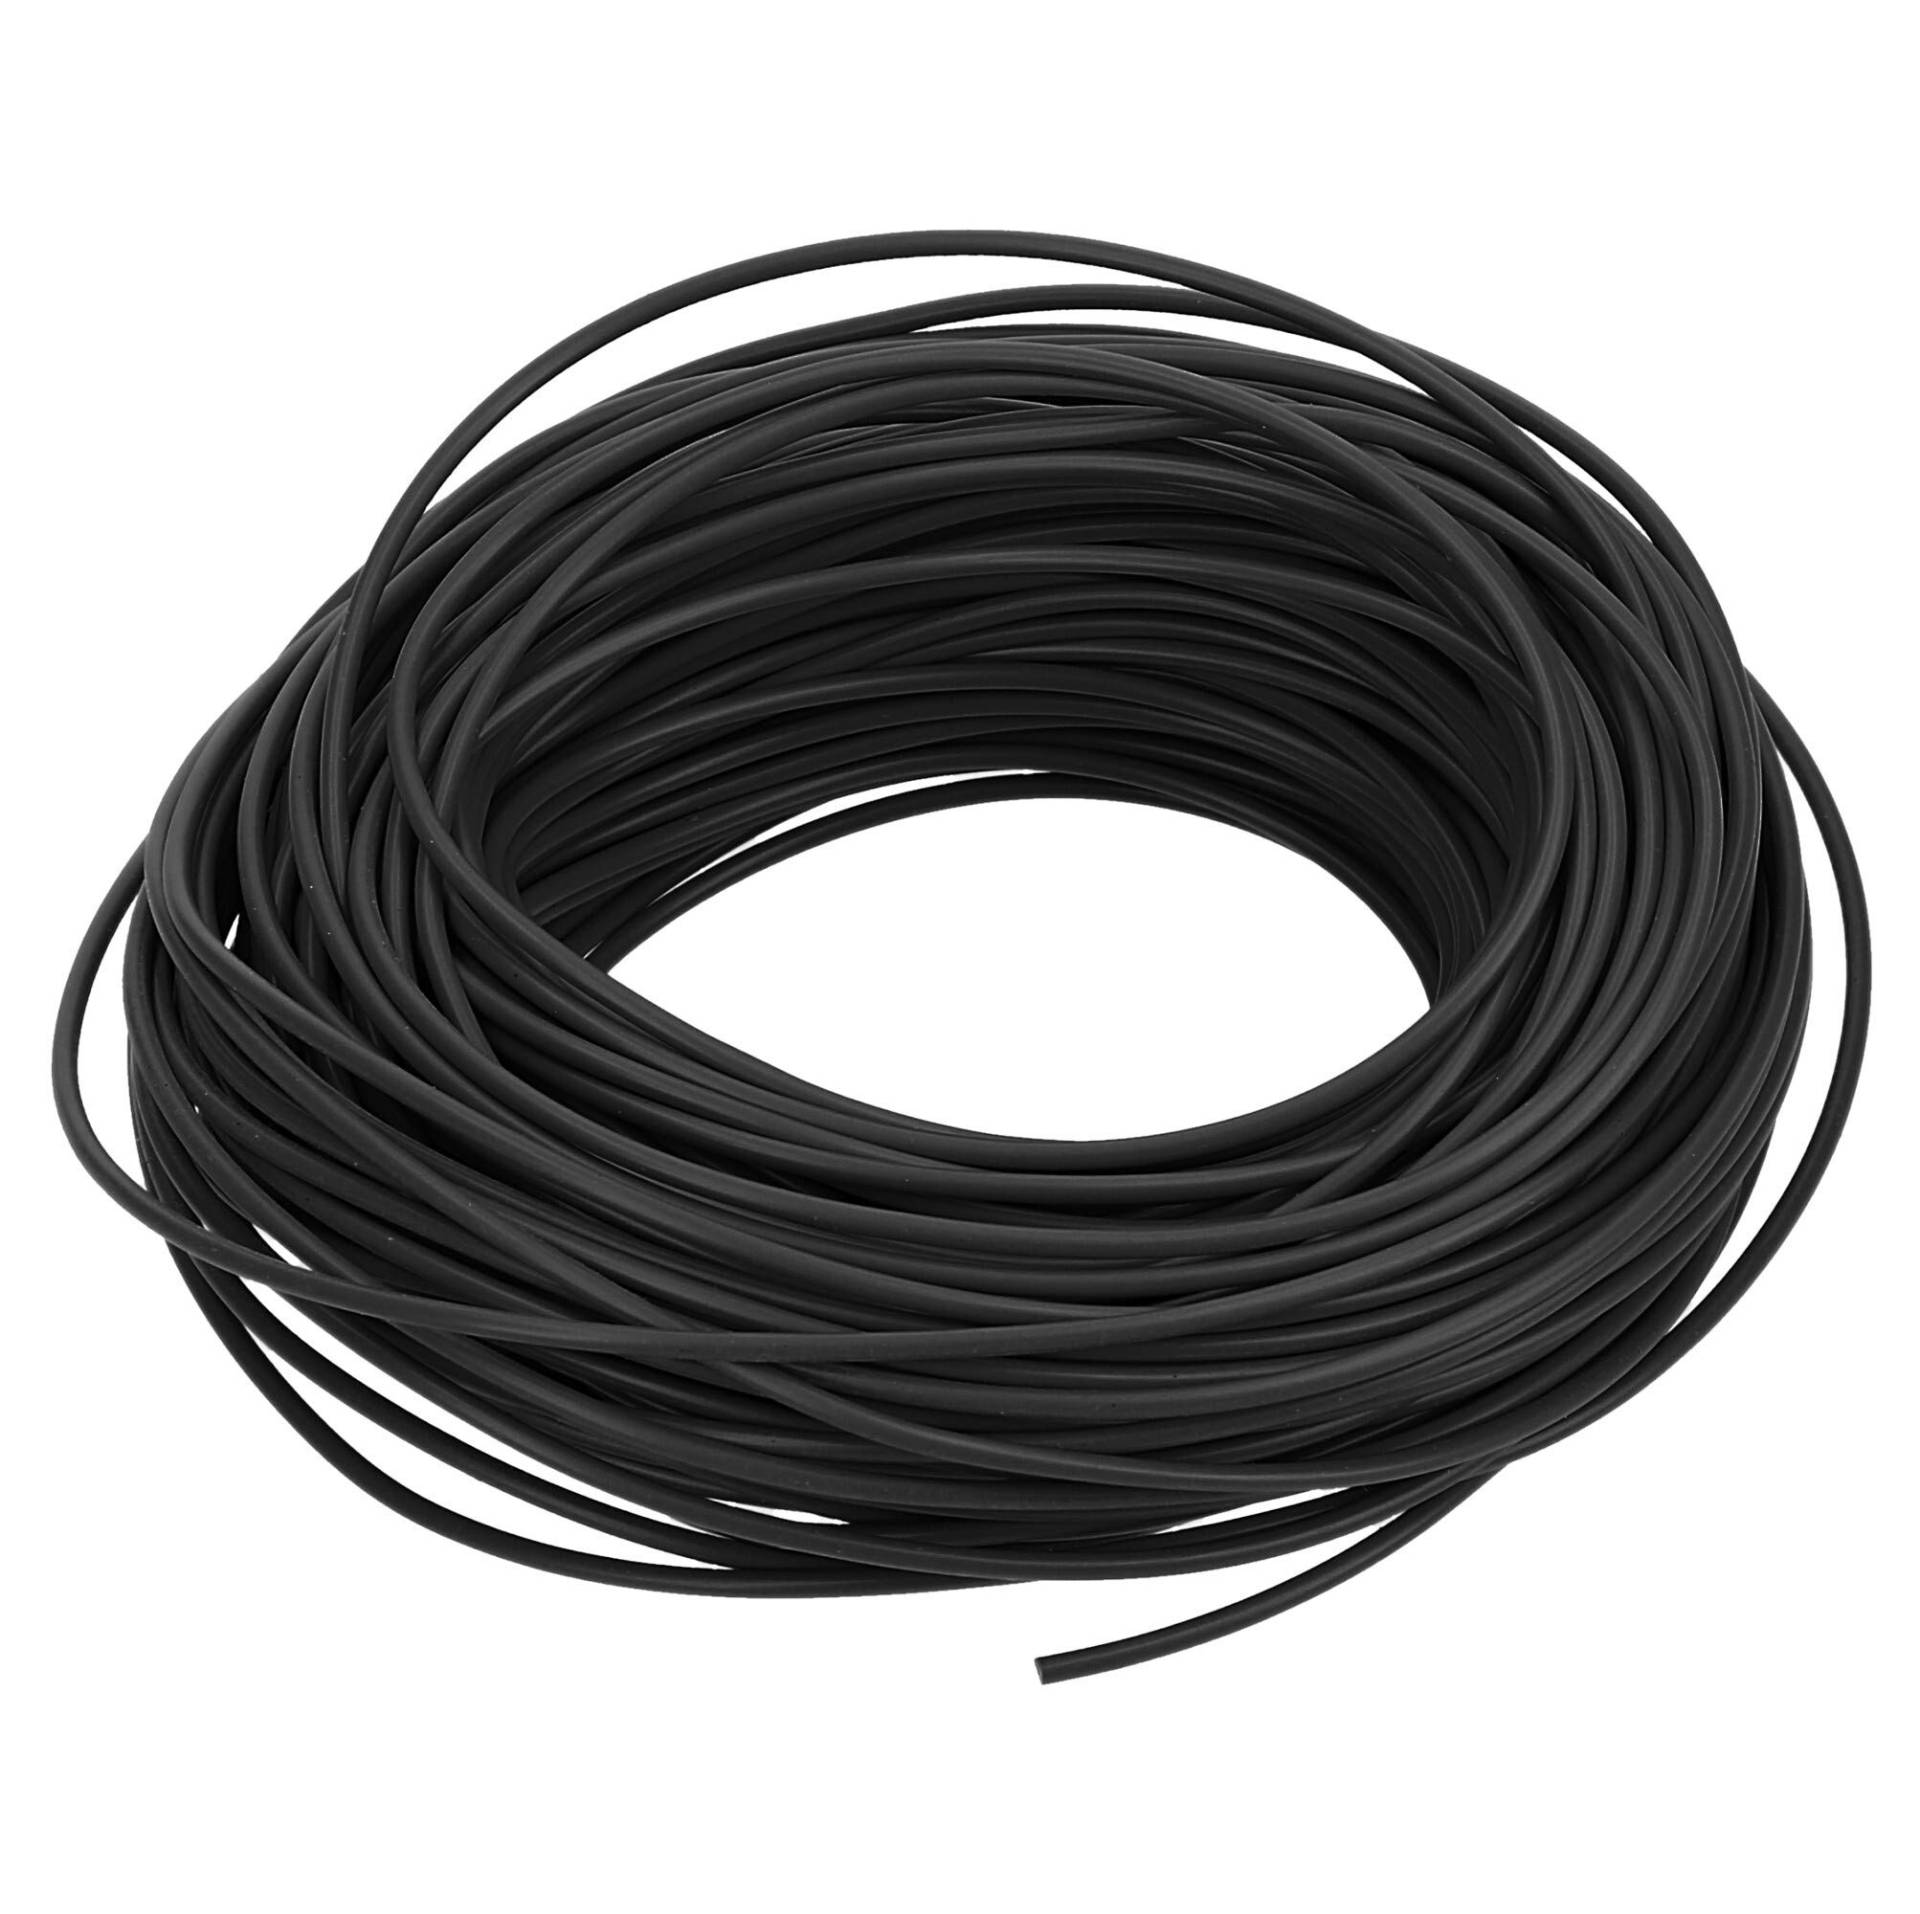 10 Meter Fahrzeugleitung FLRY-B 1,5 mm² schwarz I KFZ-Kabel I Kabel für KFZ-Elektrik von Kalitec